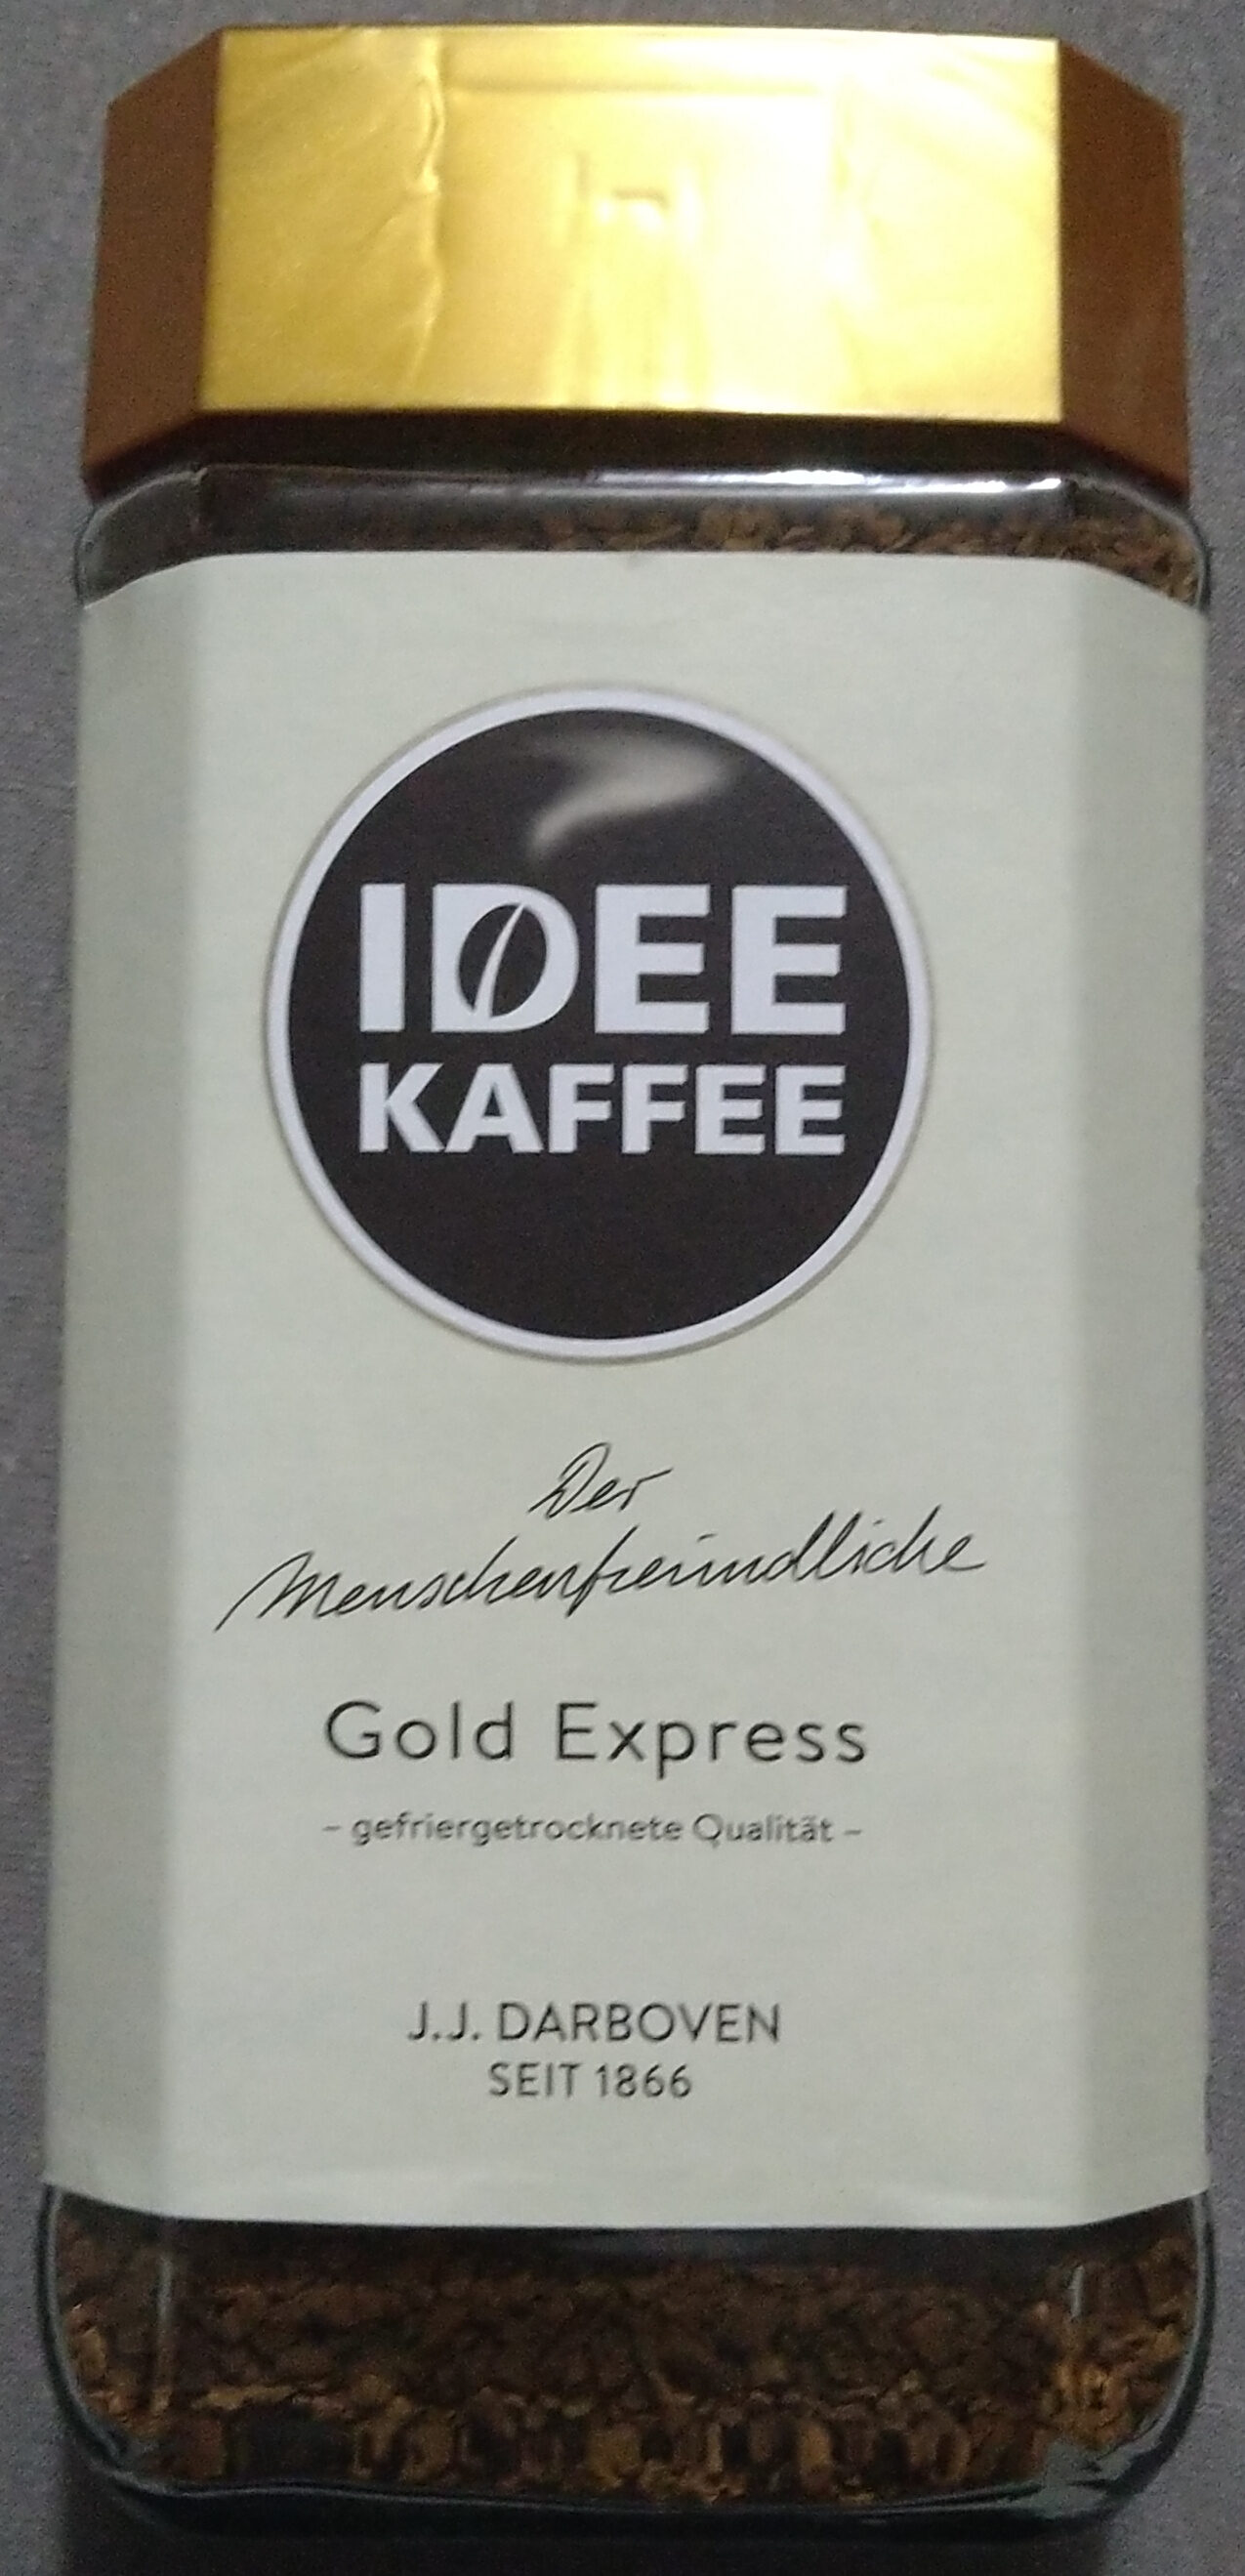 Idee Kaffee Gold Express - Produkt - en